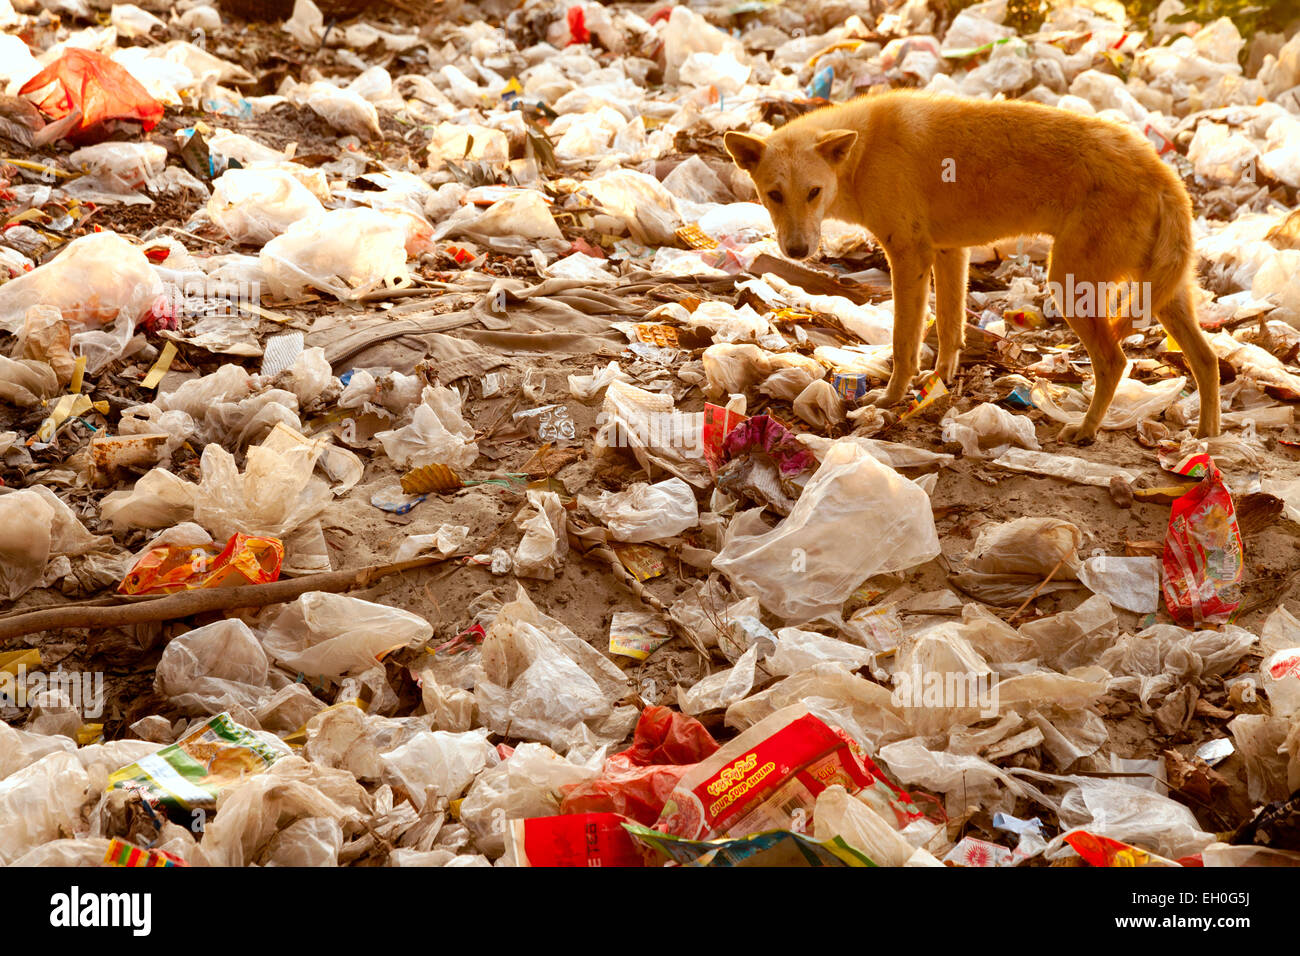 Asia Pollution - Ein Hund auf einem Müllhaufen Nahrungssuche - Beispiel für schwere Verschmutzung; Mandalay, Myanmar ( Burma ), Asien Stockfoto